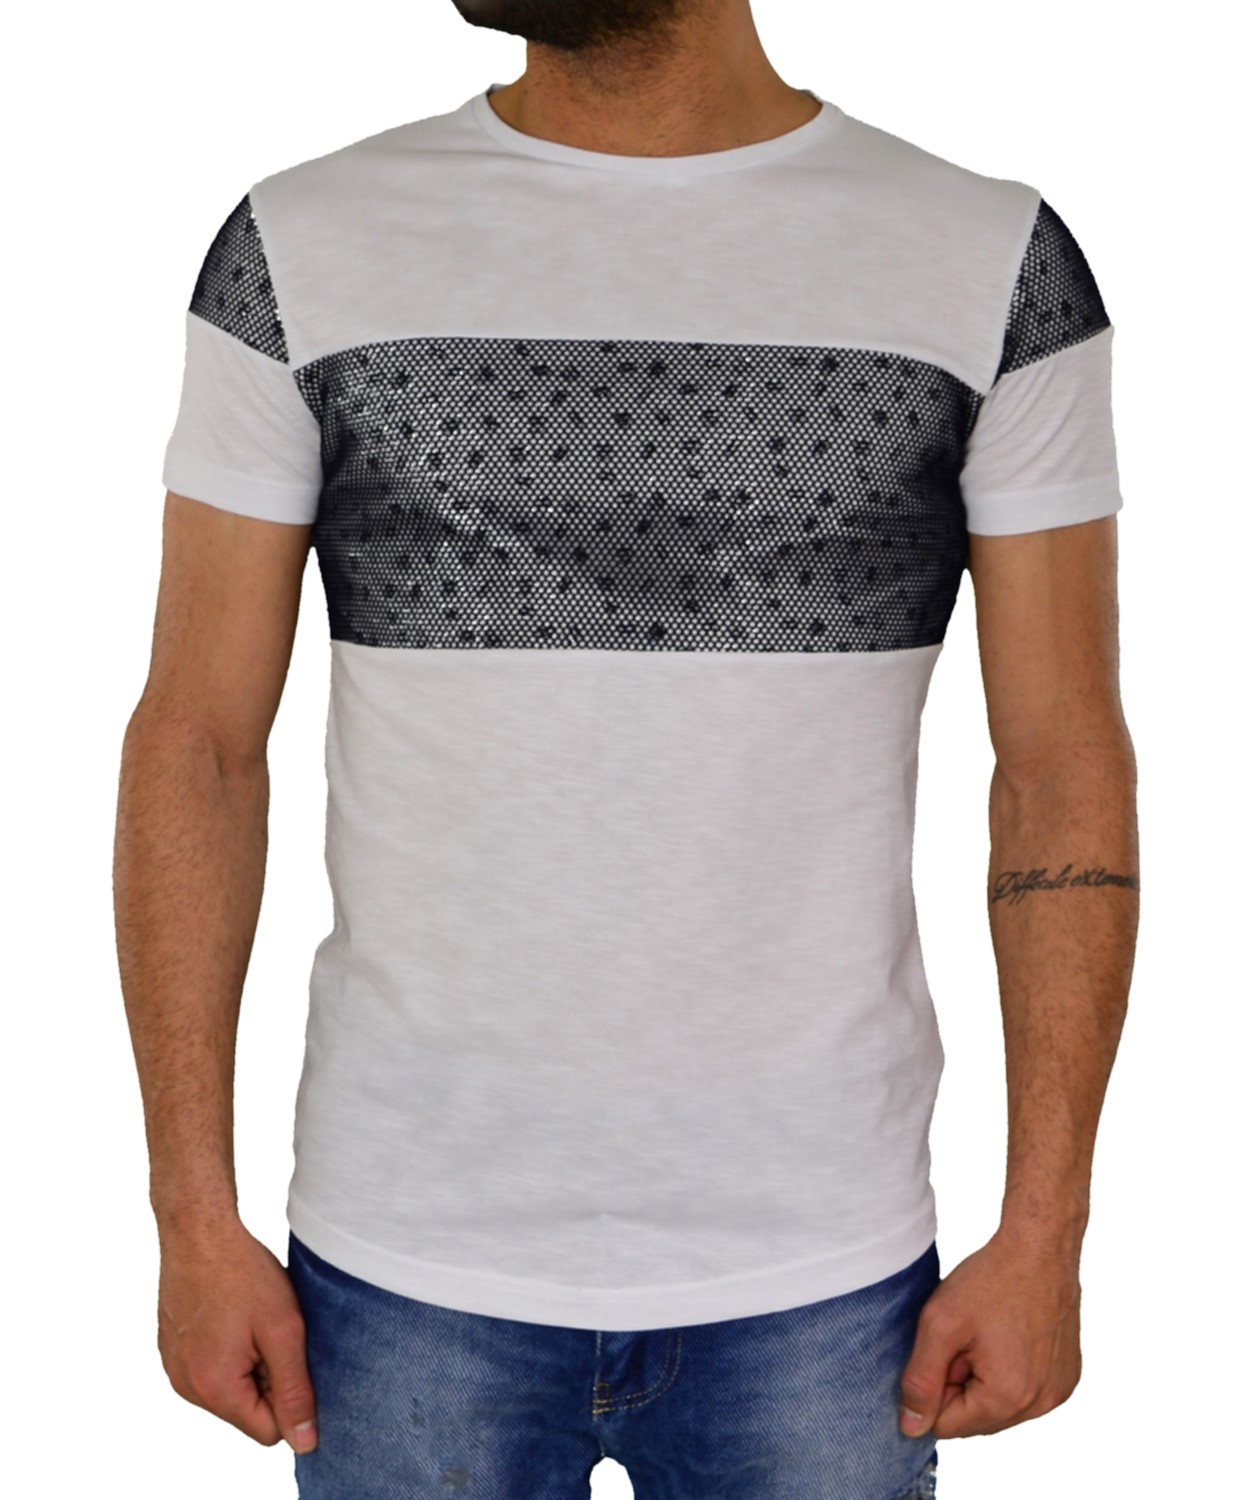 Ανδρικό T-shirt GioS λευκό με δίχτυ 920417G